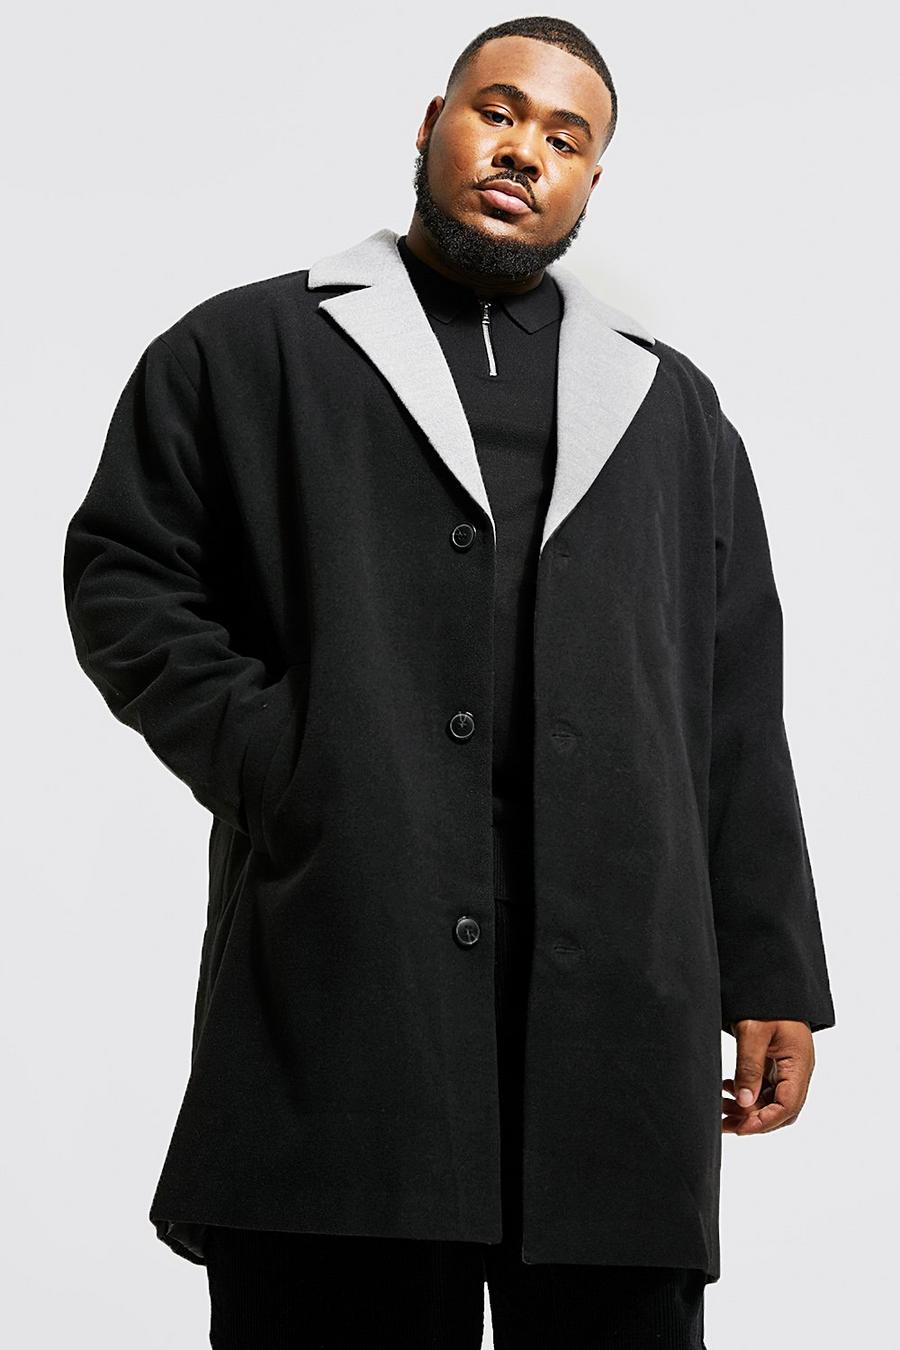 שחור negro מעיל עליון עם רכיסה אחת וצווארון בצבעים מנוגדים, מידות גדולות